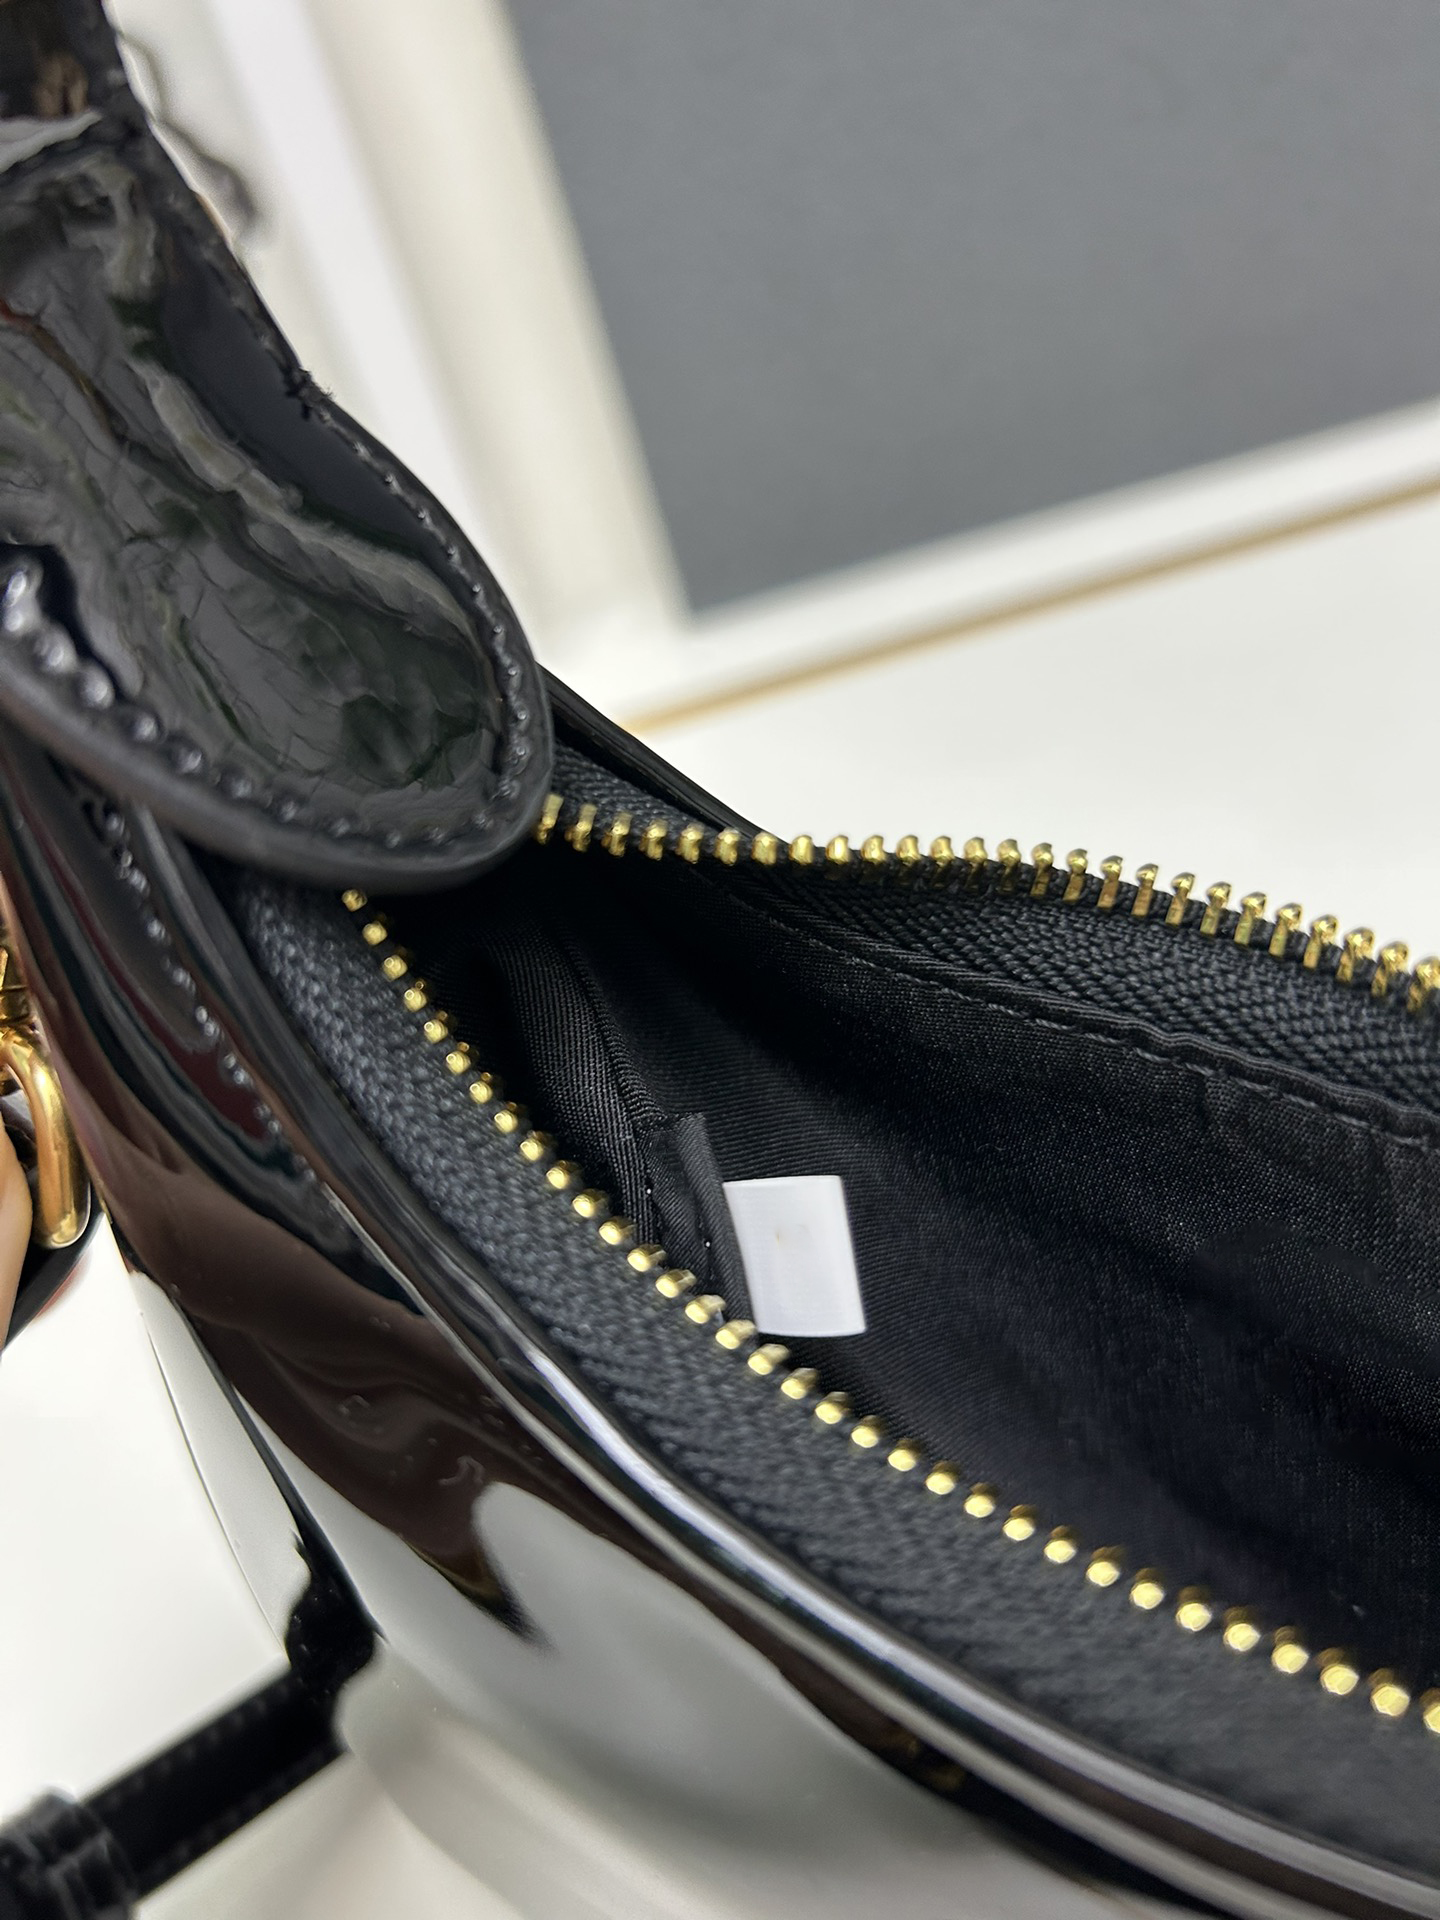 ファッションブランドのハンドバッグ女性肩の財布ホーボバッグレザーカウレザーパーズショルダークロスボディバッグカジュアルオールマッチ女性バッグ卸売